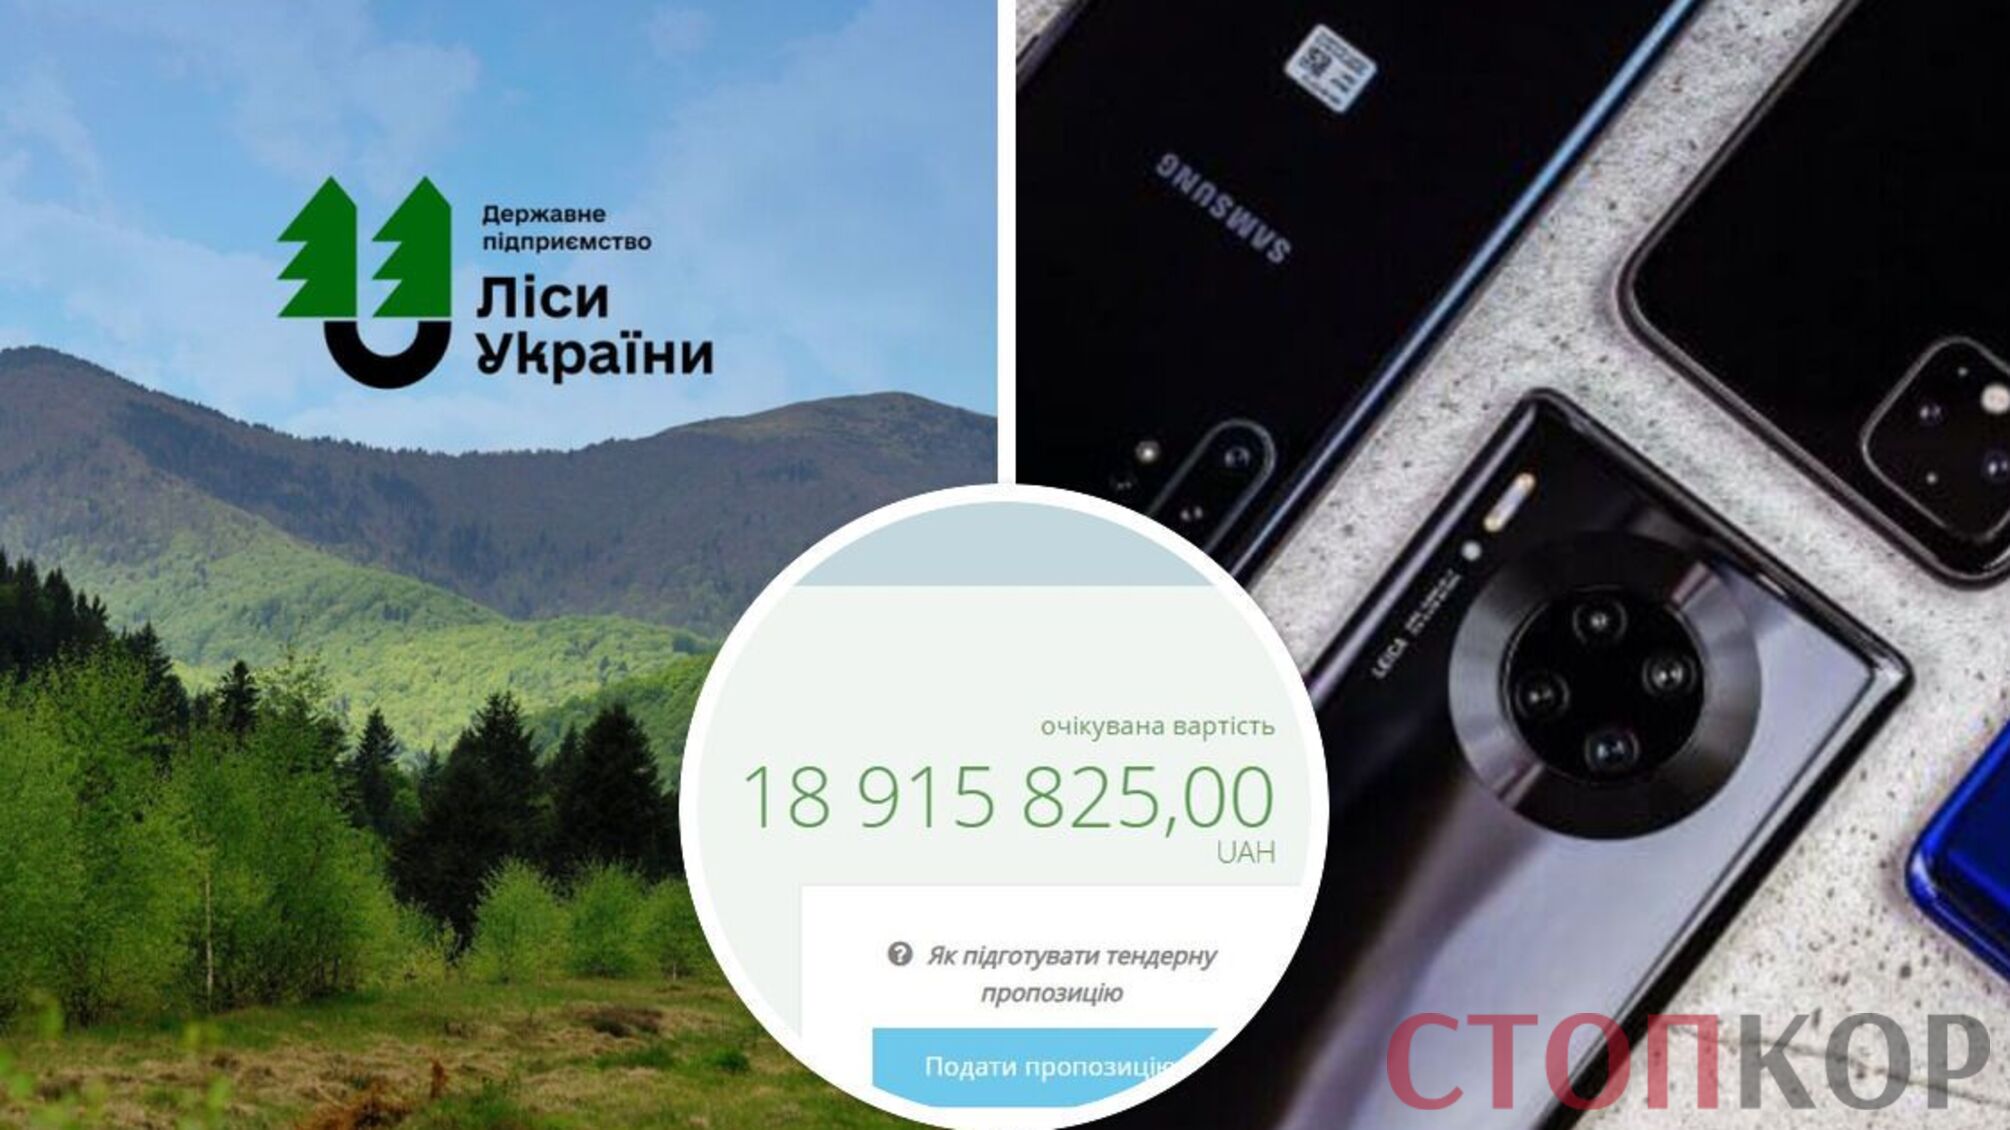 ГП 'Леса Украины' закупит 2500 телефонов на почти 19 млн грн